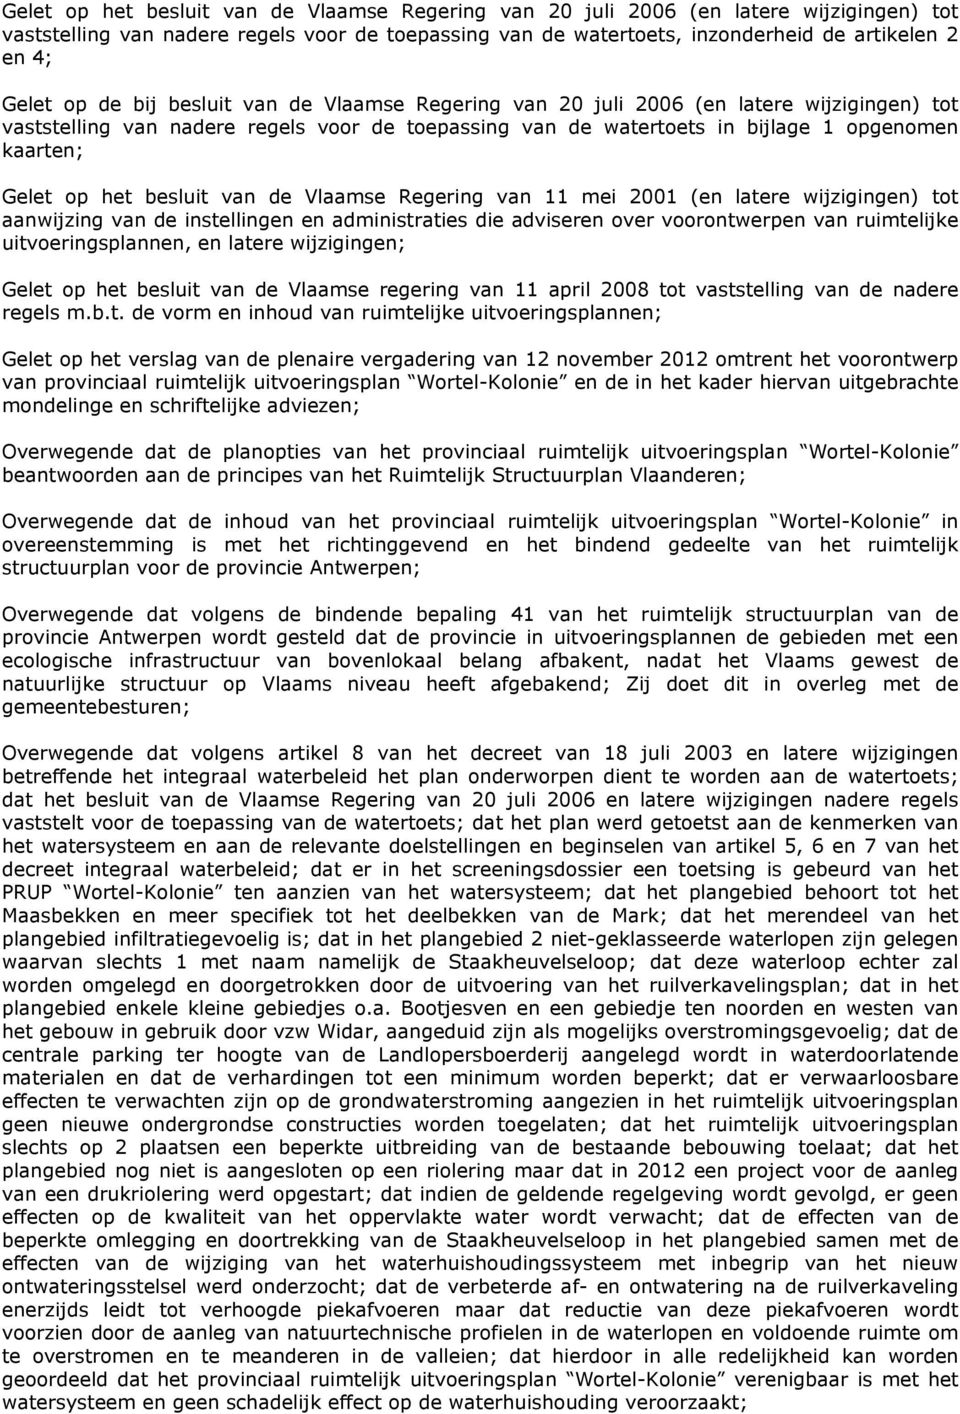 besluit van de Vlaamse Regering van 11 mei 2001 (en latere wijzigingen) tot aanwijzing van de instellingen en administraties die adviseren over voorontwerpen van ruimtelijke uitvoeringsplannen, en